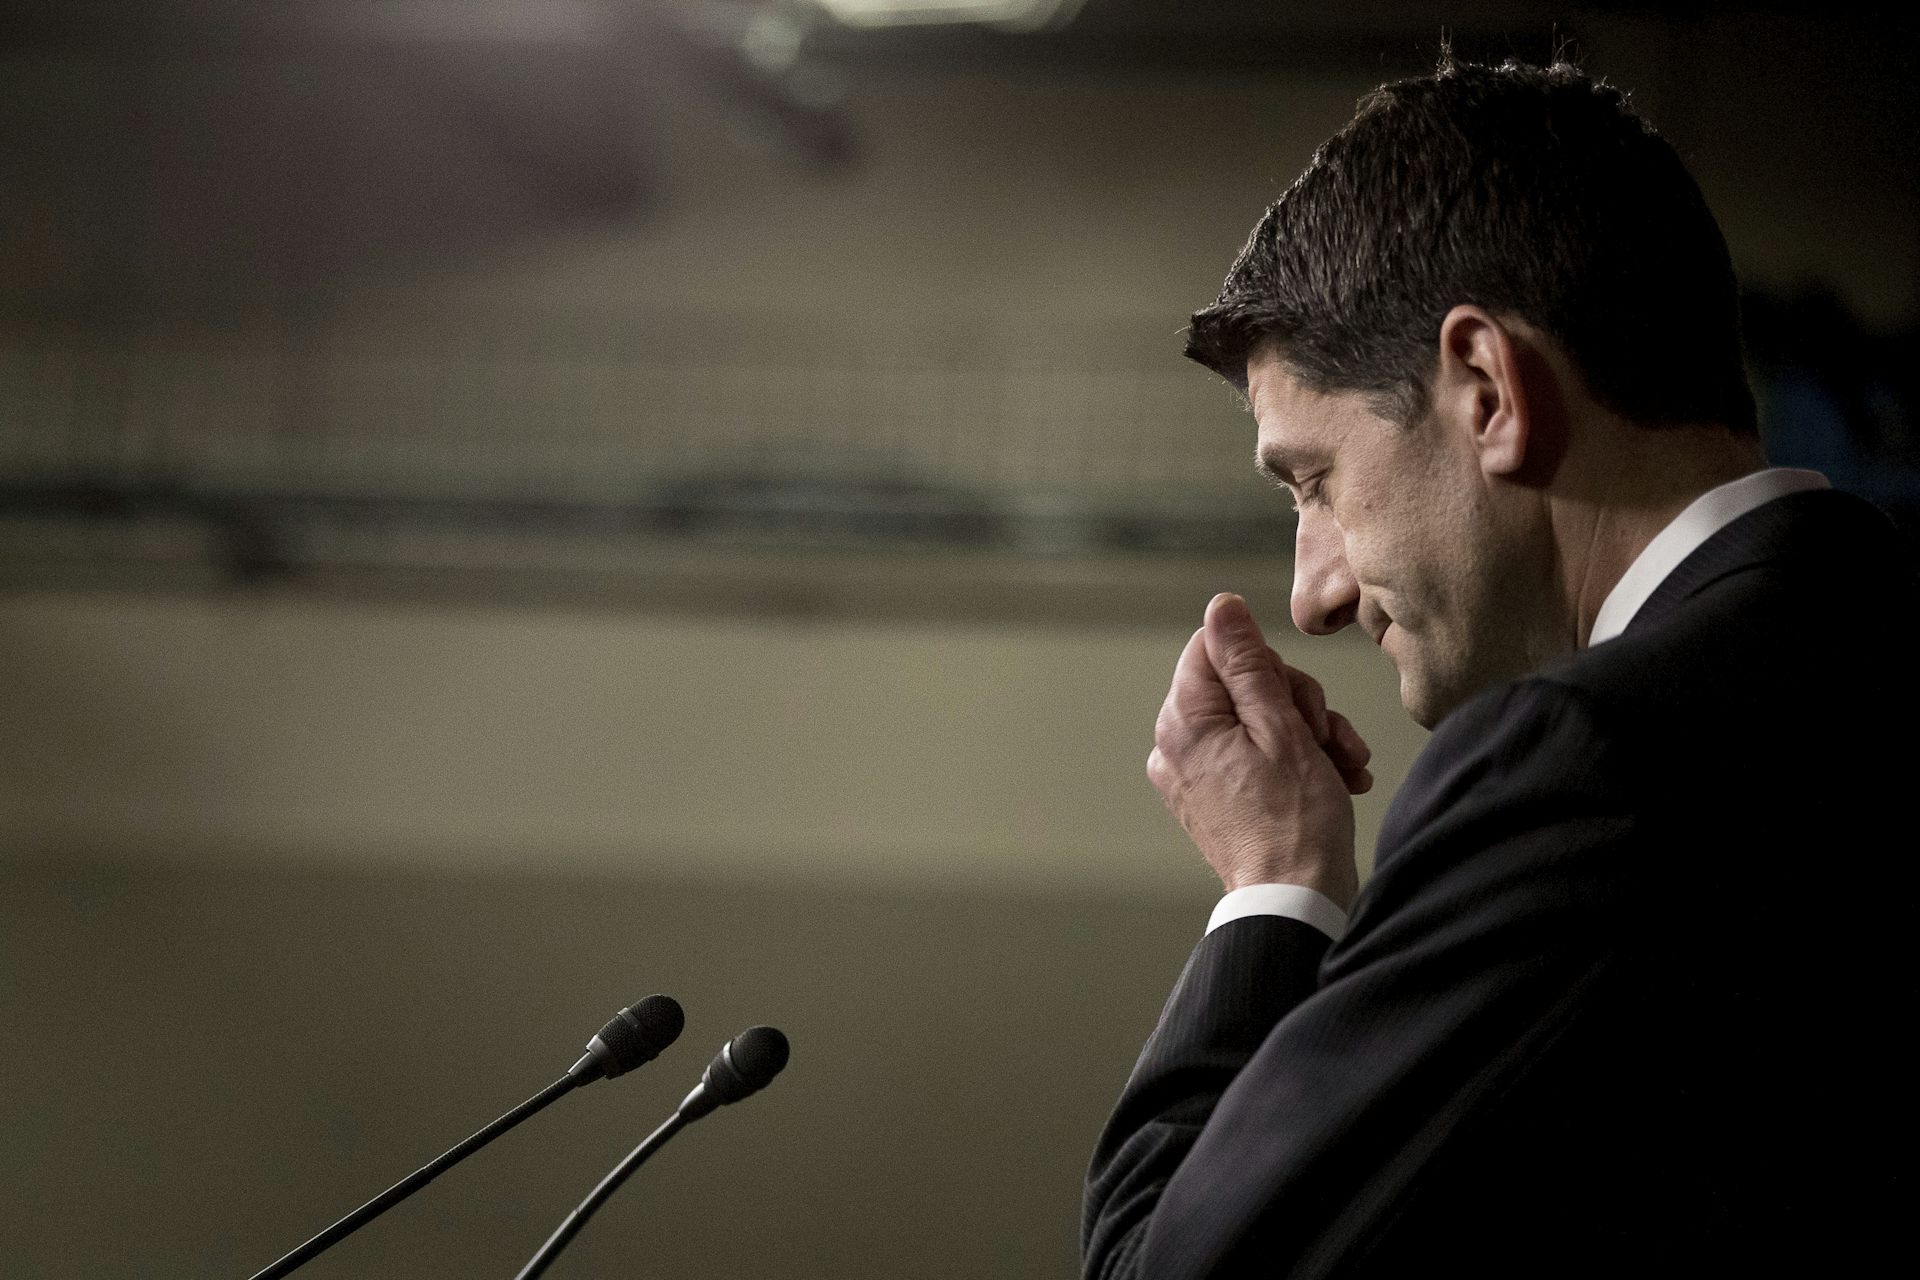 Republicans fumble ACA repeal: Expert reaction